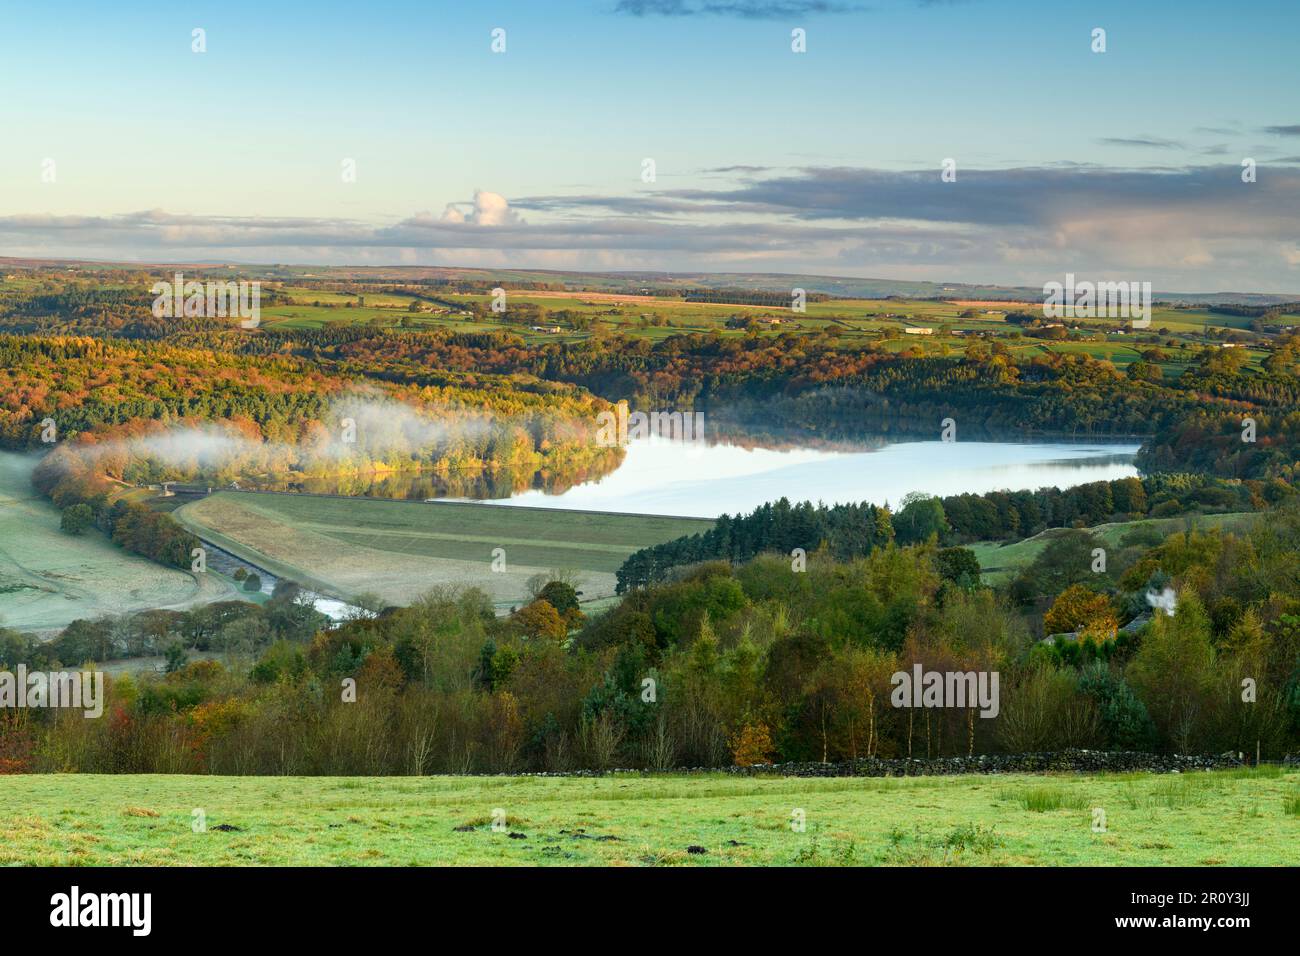 Swinsty Reservoir Sunlight (longue distance, collines colorées, temps brumeux froid ensoleillé, ciel bleu, eau) - Washburn Valley, Yorkshire, Angleterre, Royaume-Uni. Banque D'Images